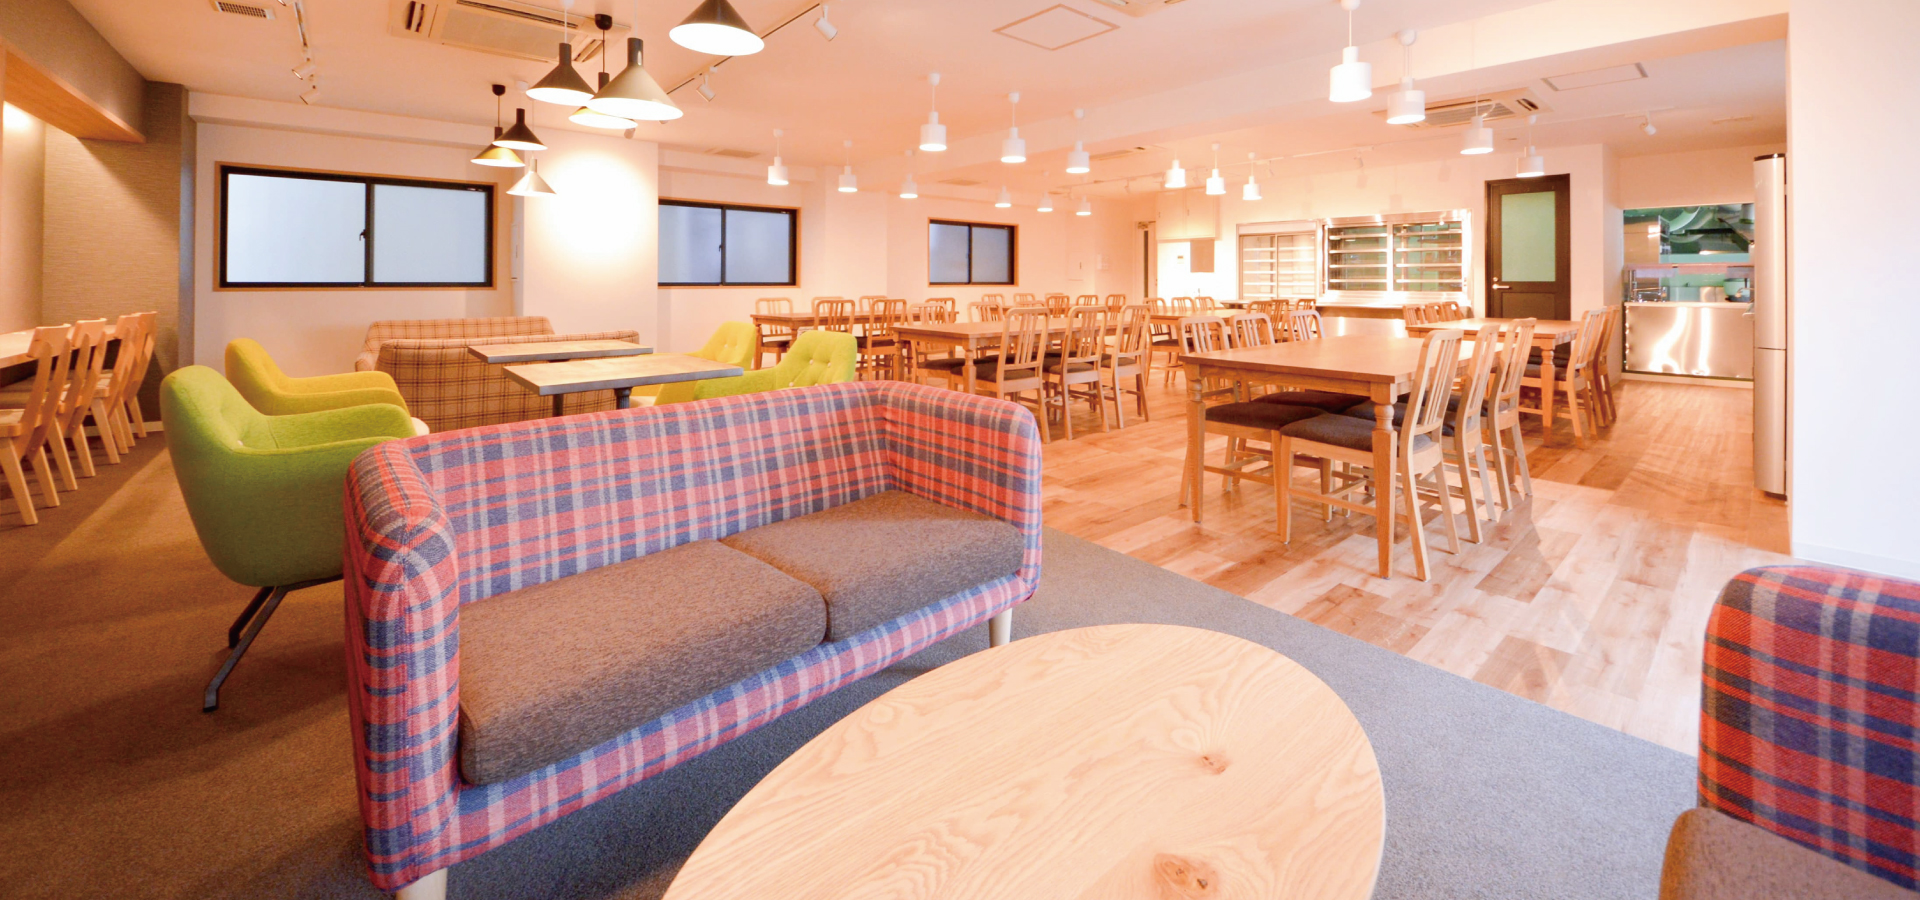 ウィルハイム江坂なら食堂で同じ時間帯に食事をとるので 同世代の入居者同士でたのしく食事をすることができます。｜TAKUTOの大阪学生向けマンション総合サイト｜studentroom